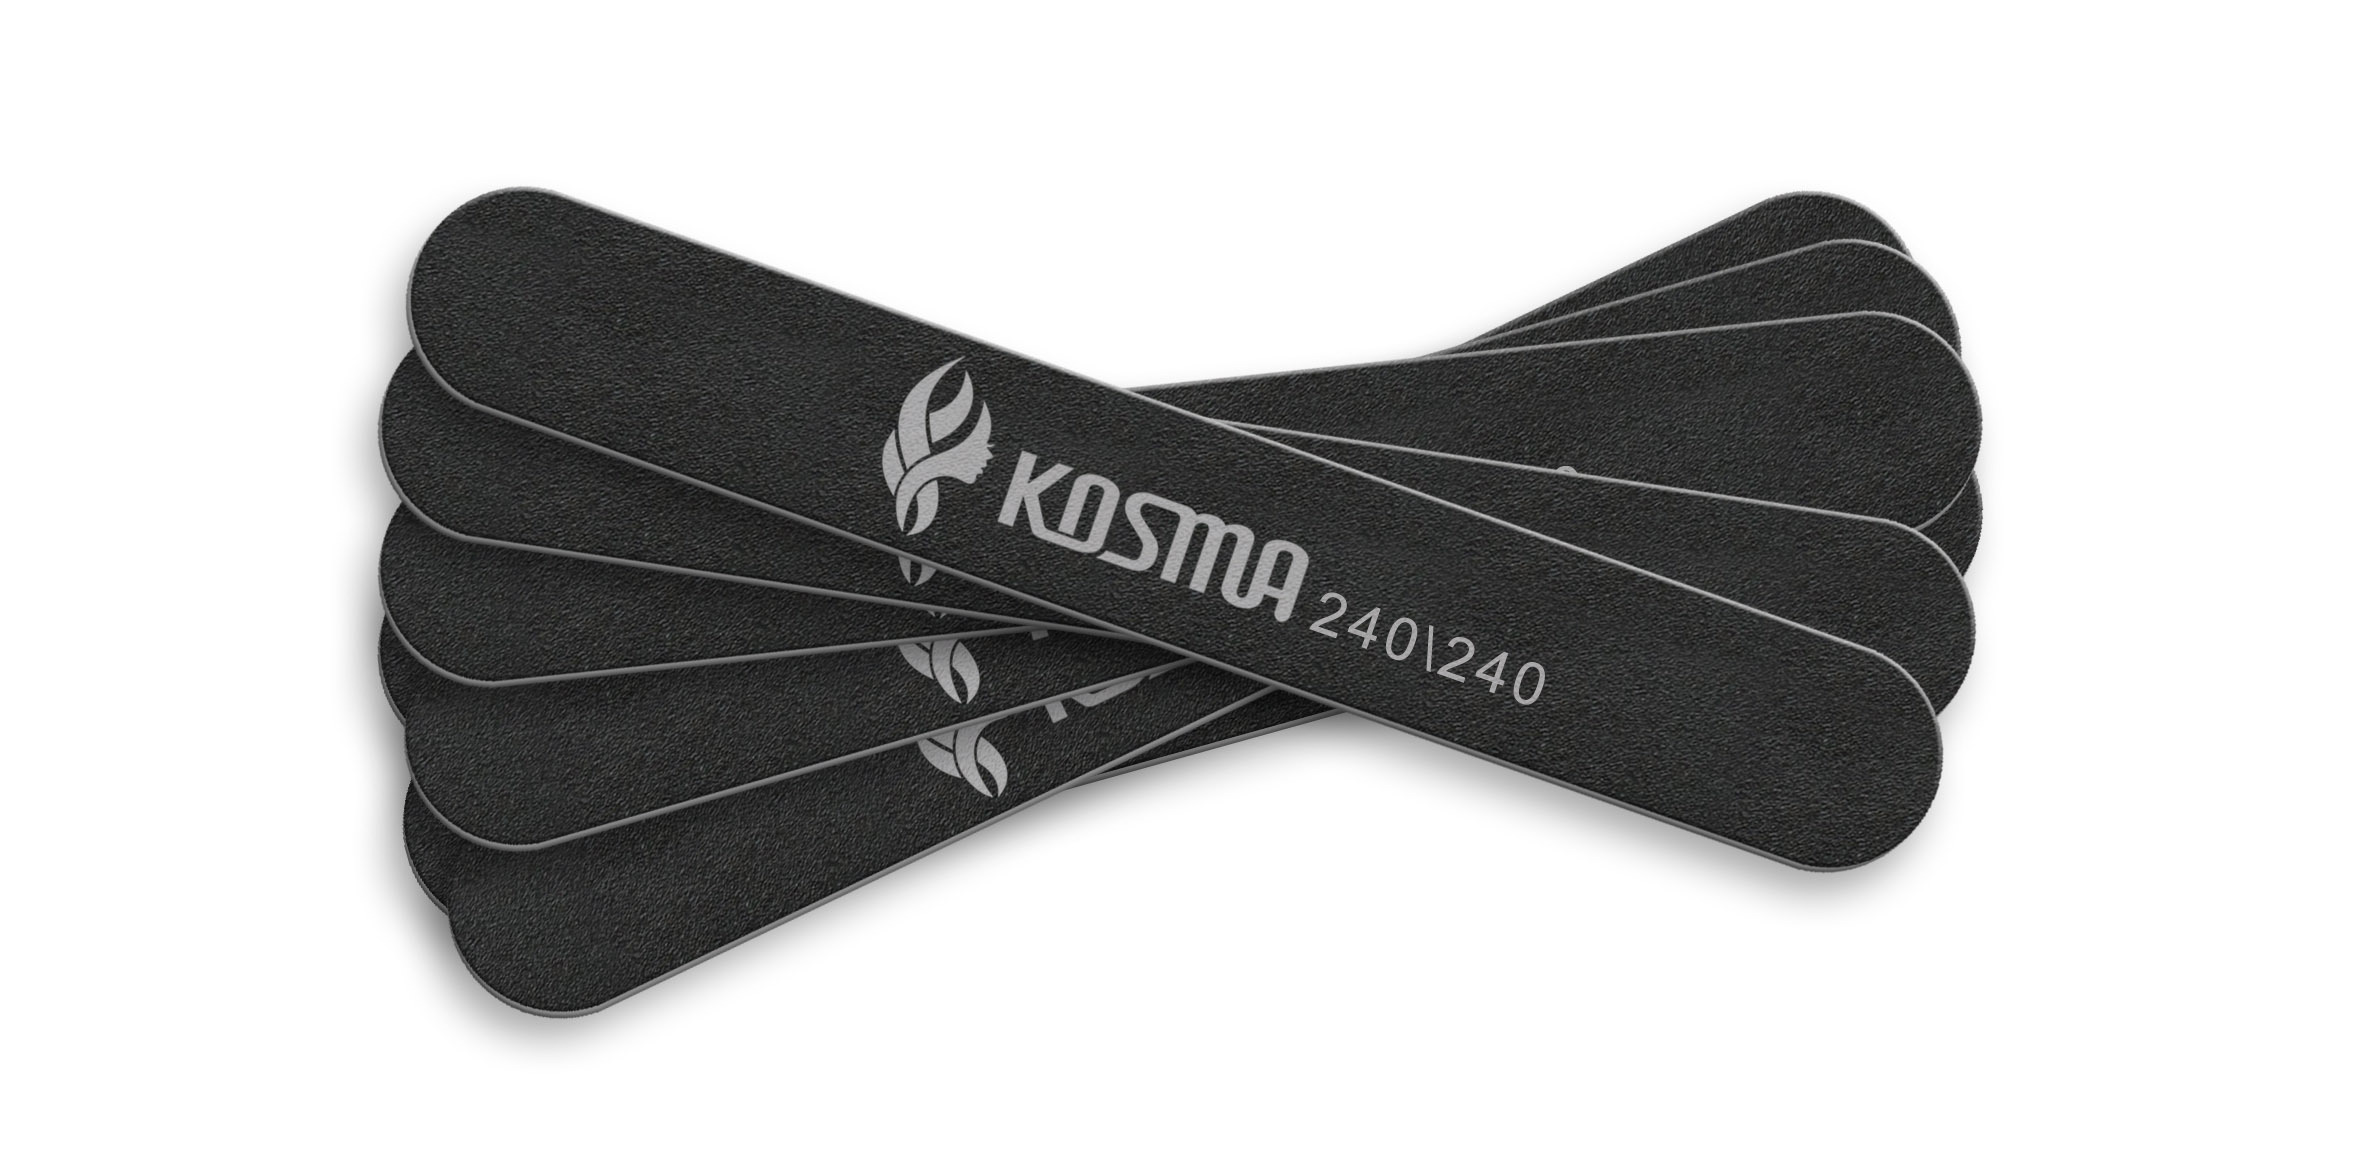 Набор пилка KOSMA прямая маленькая черная 240/240 пластиковая основа 50 шт.